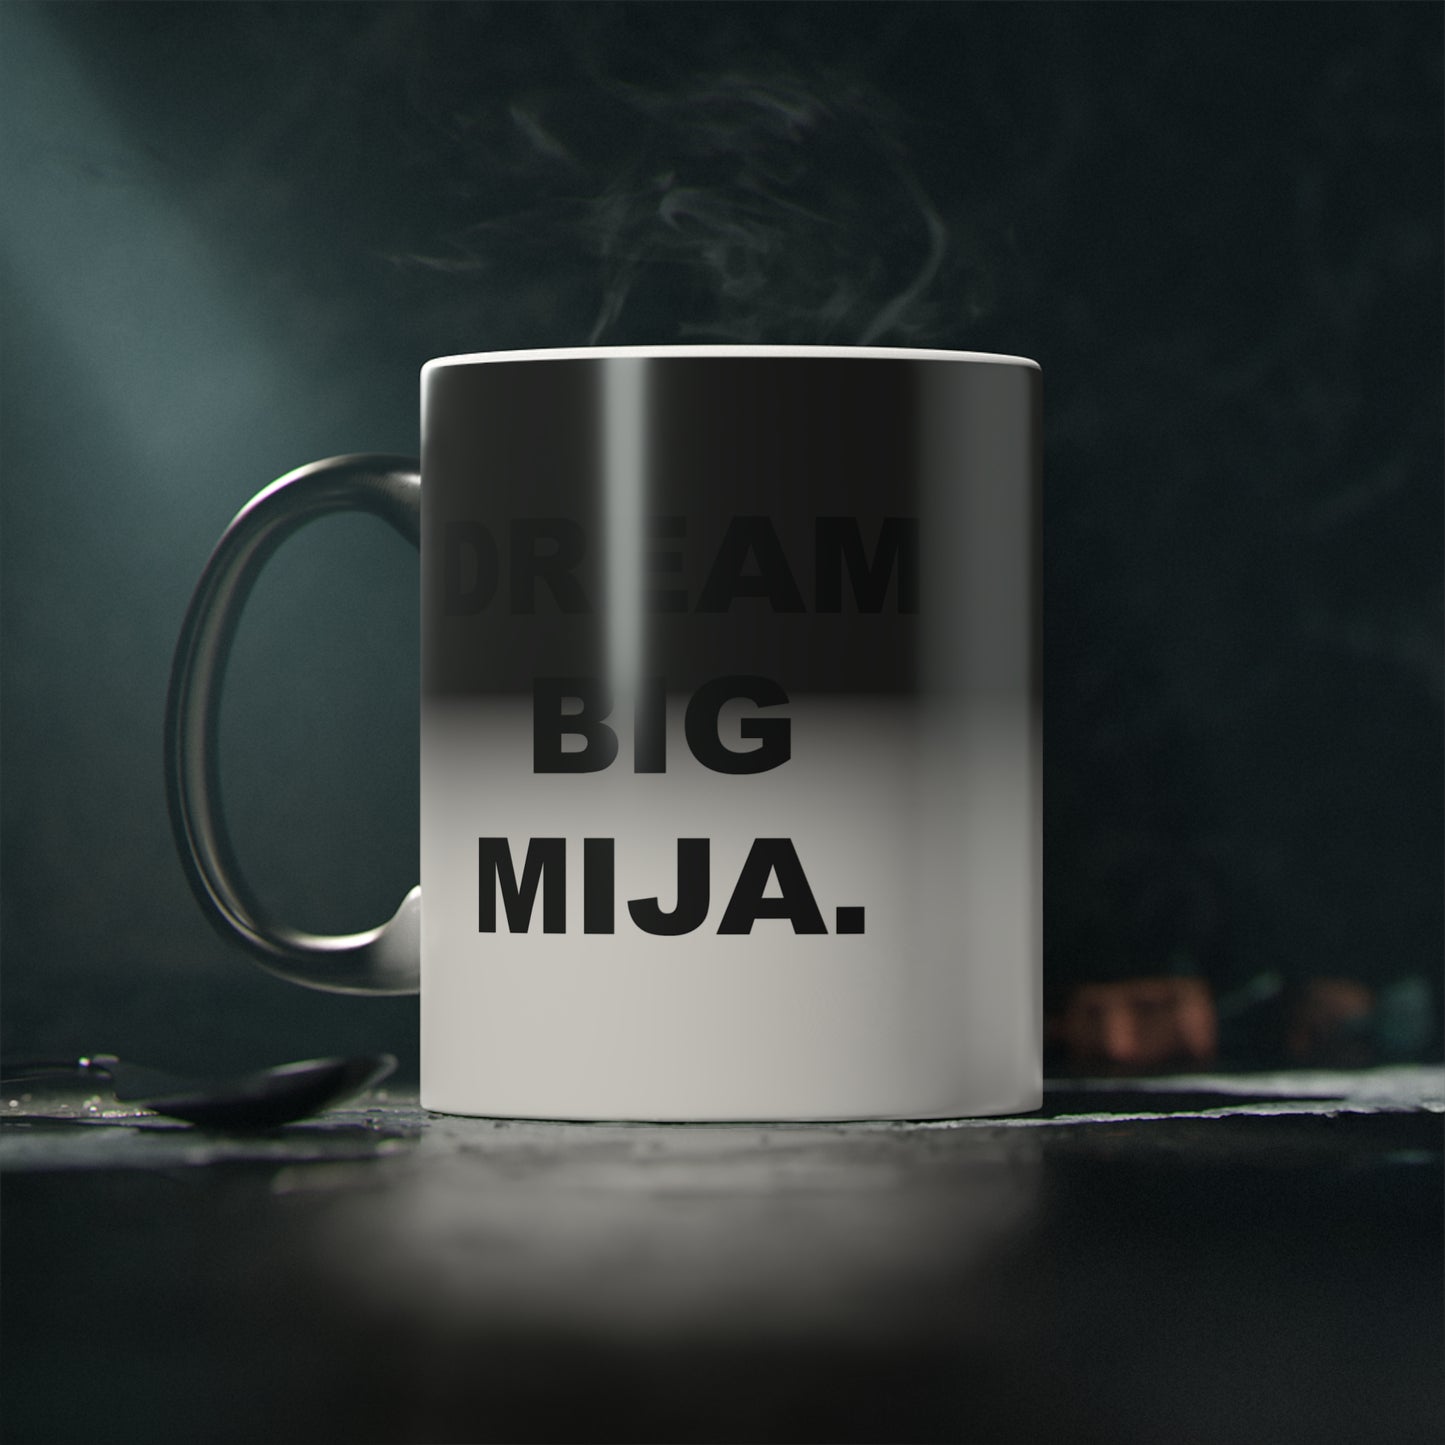 Dream Big Mija Mug 